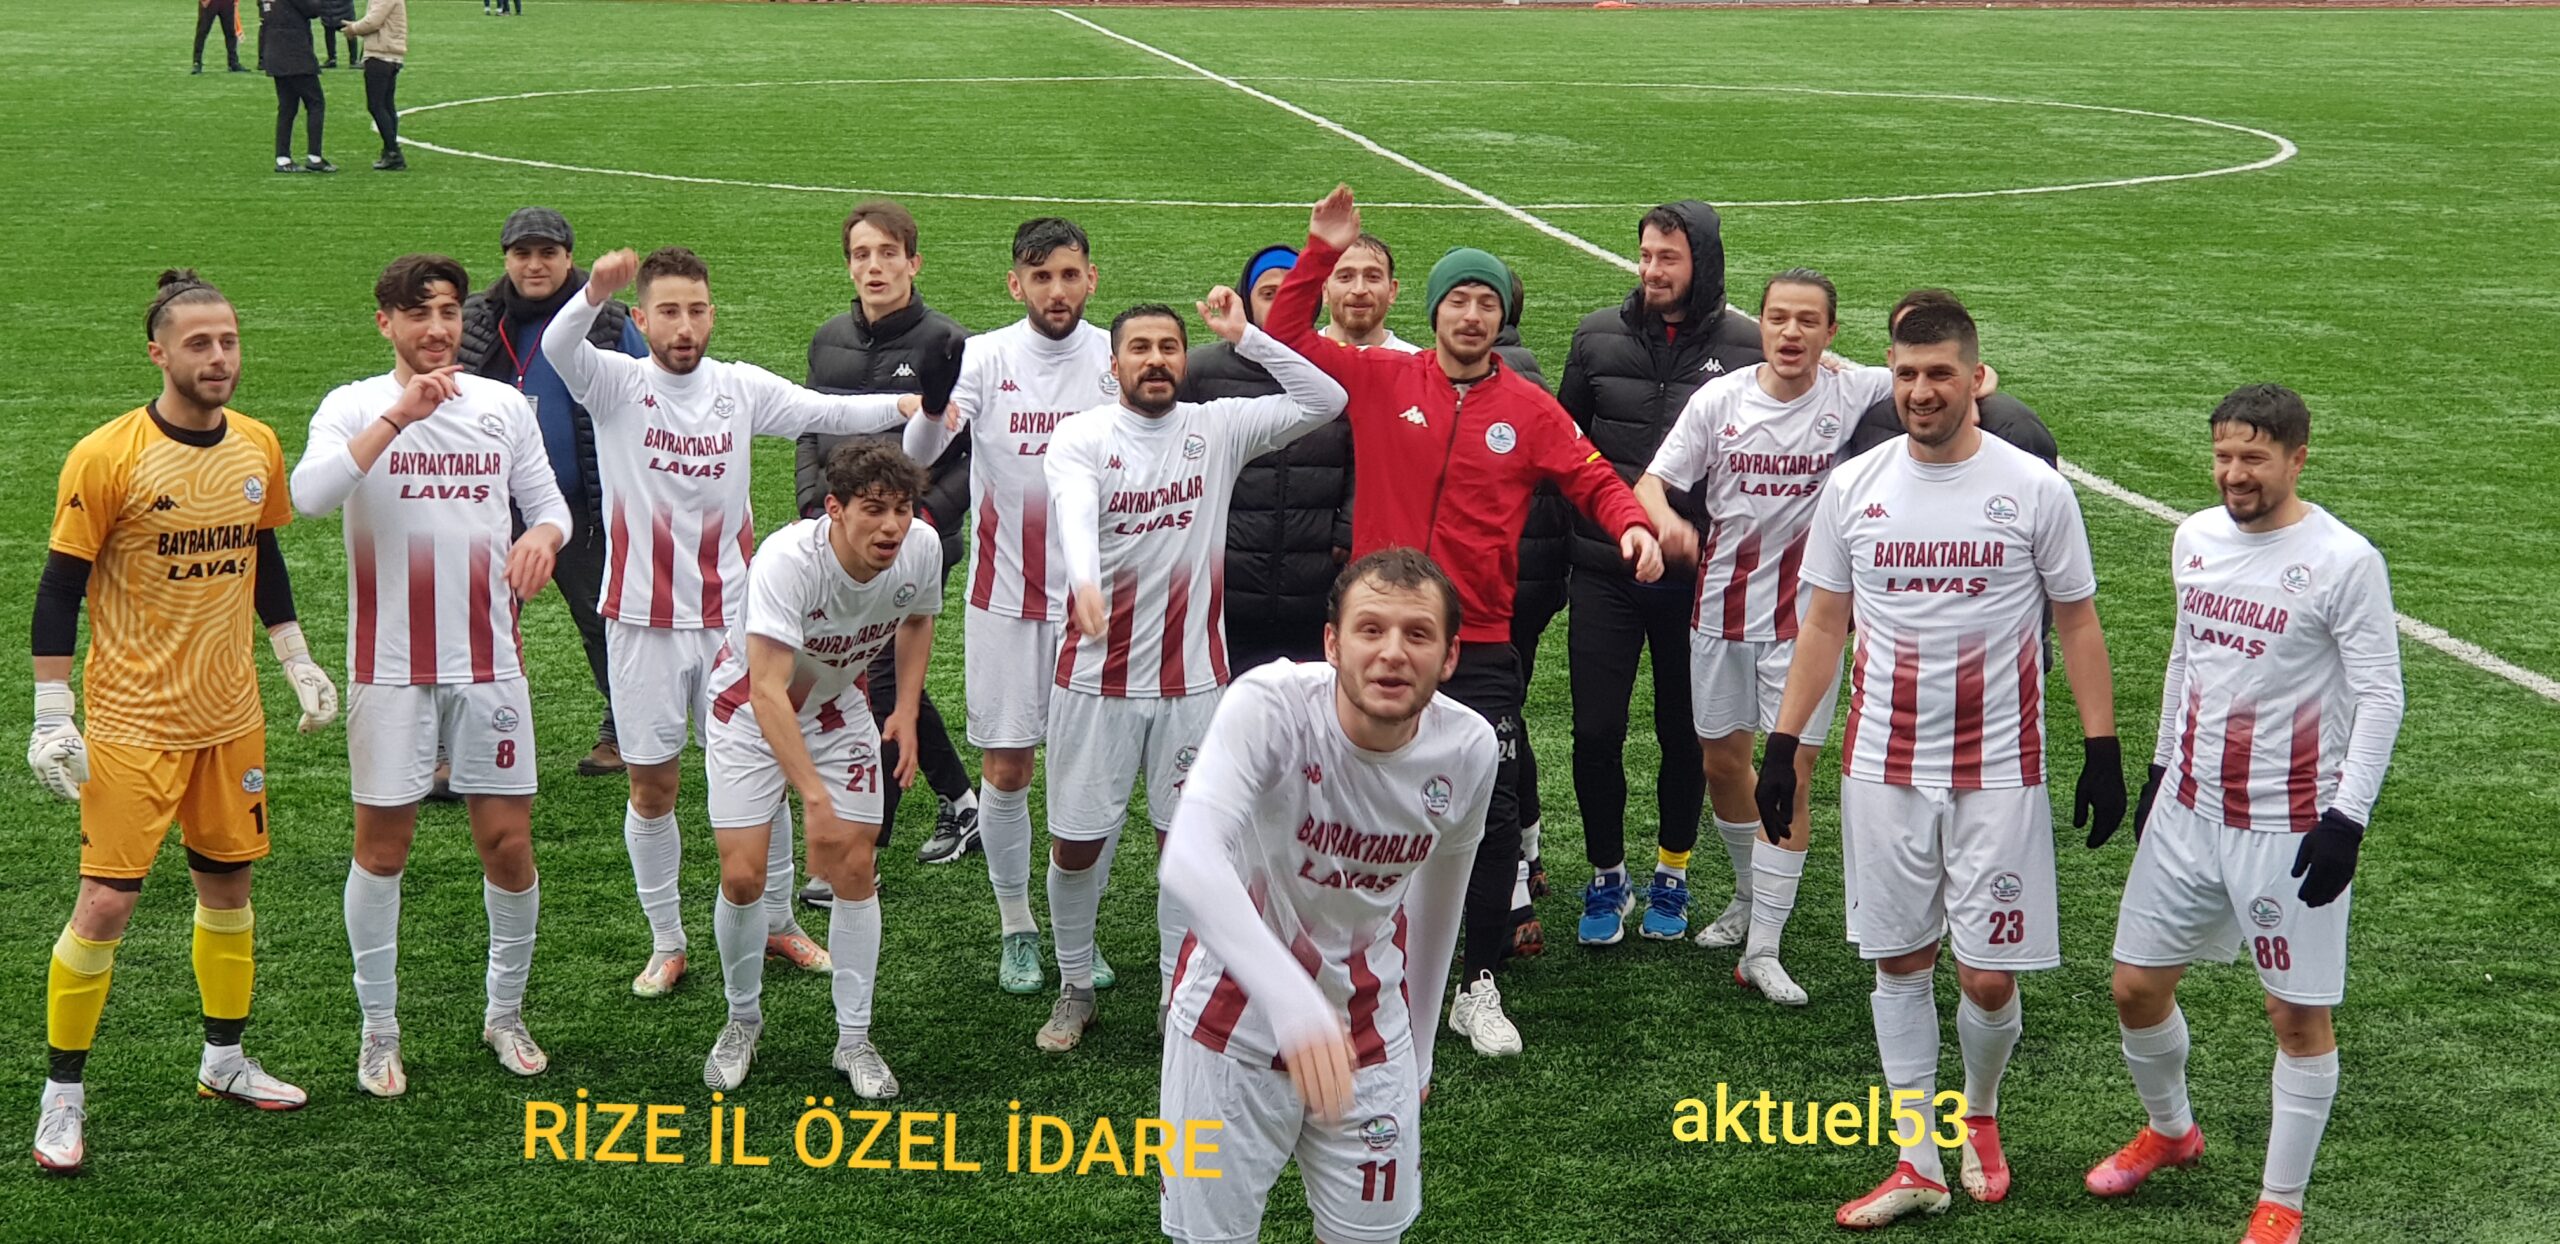 Rize İl Özel İdare 3 Trabzon Doğanspor  0